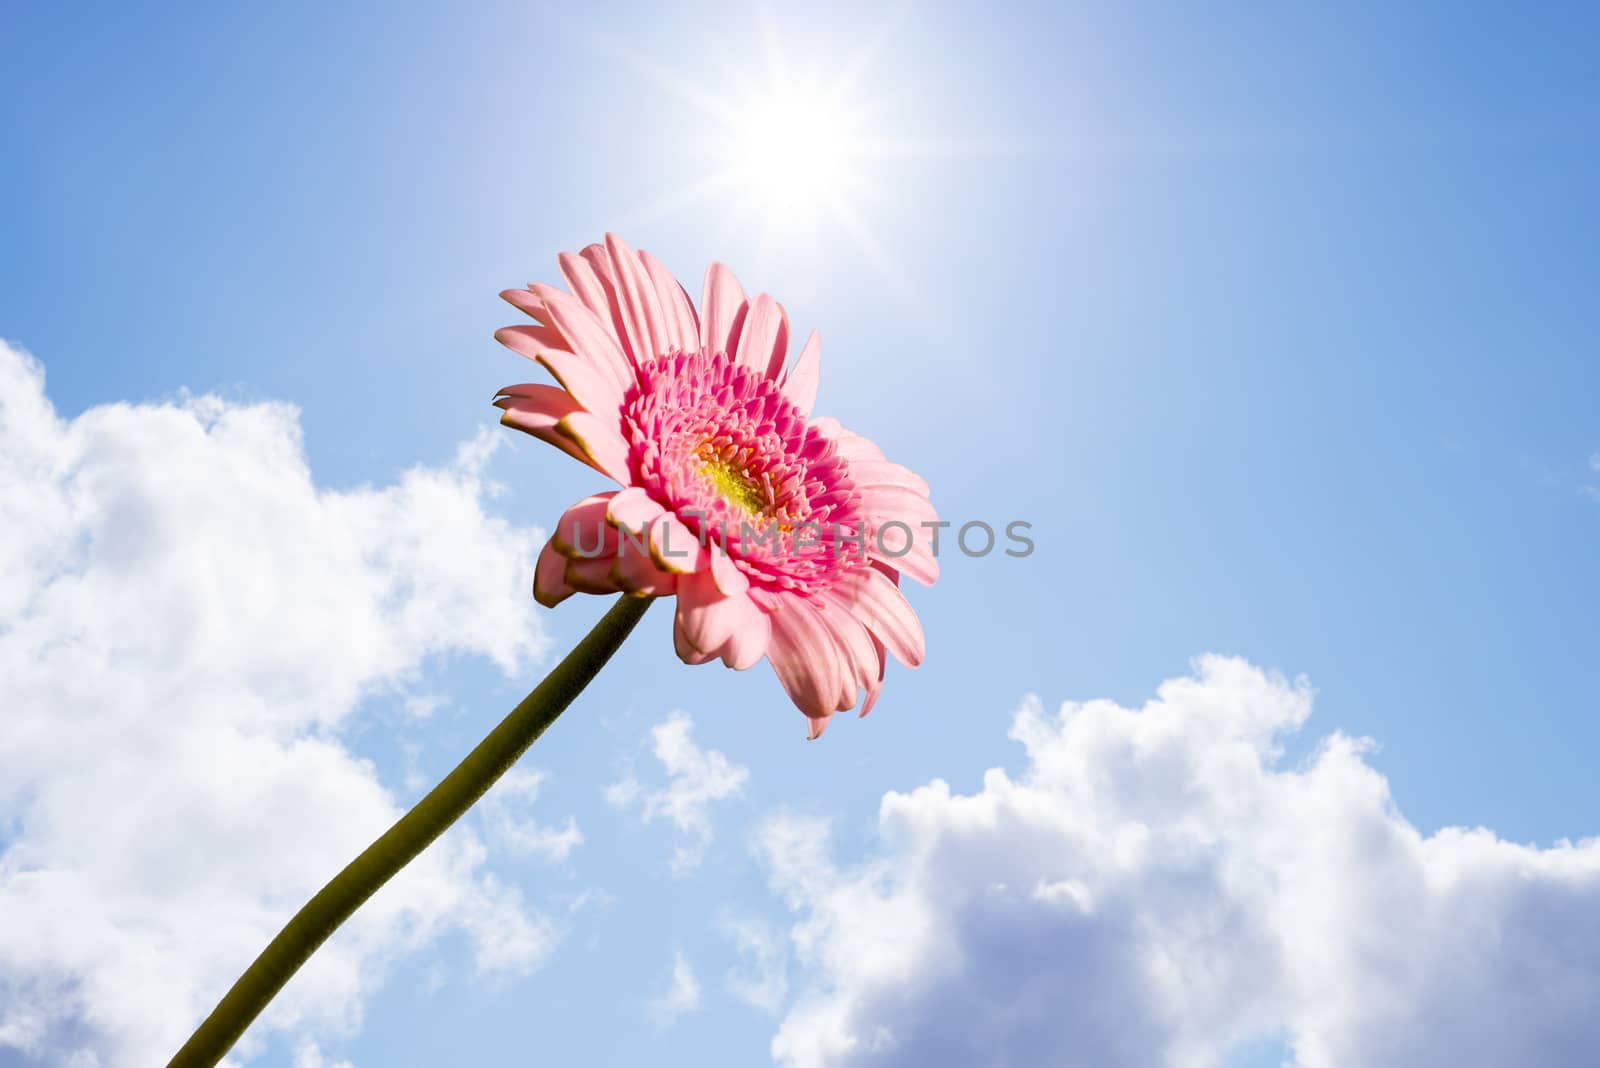 single pink gerbera flower by morrbyte